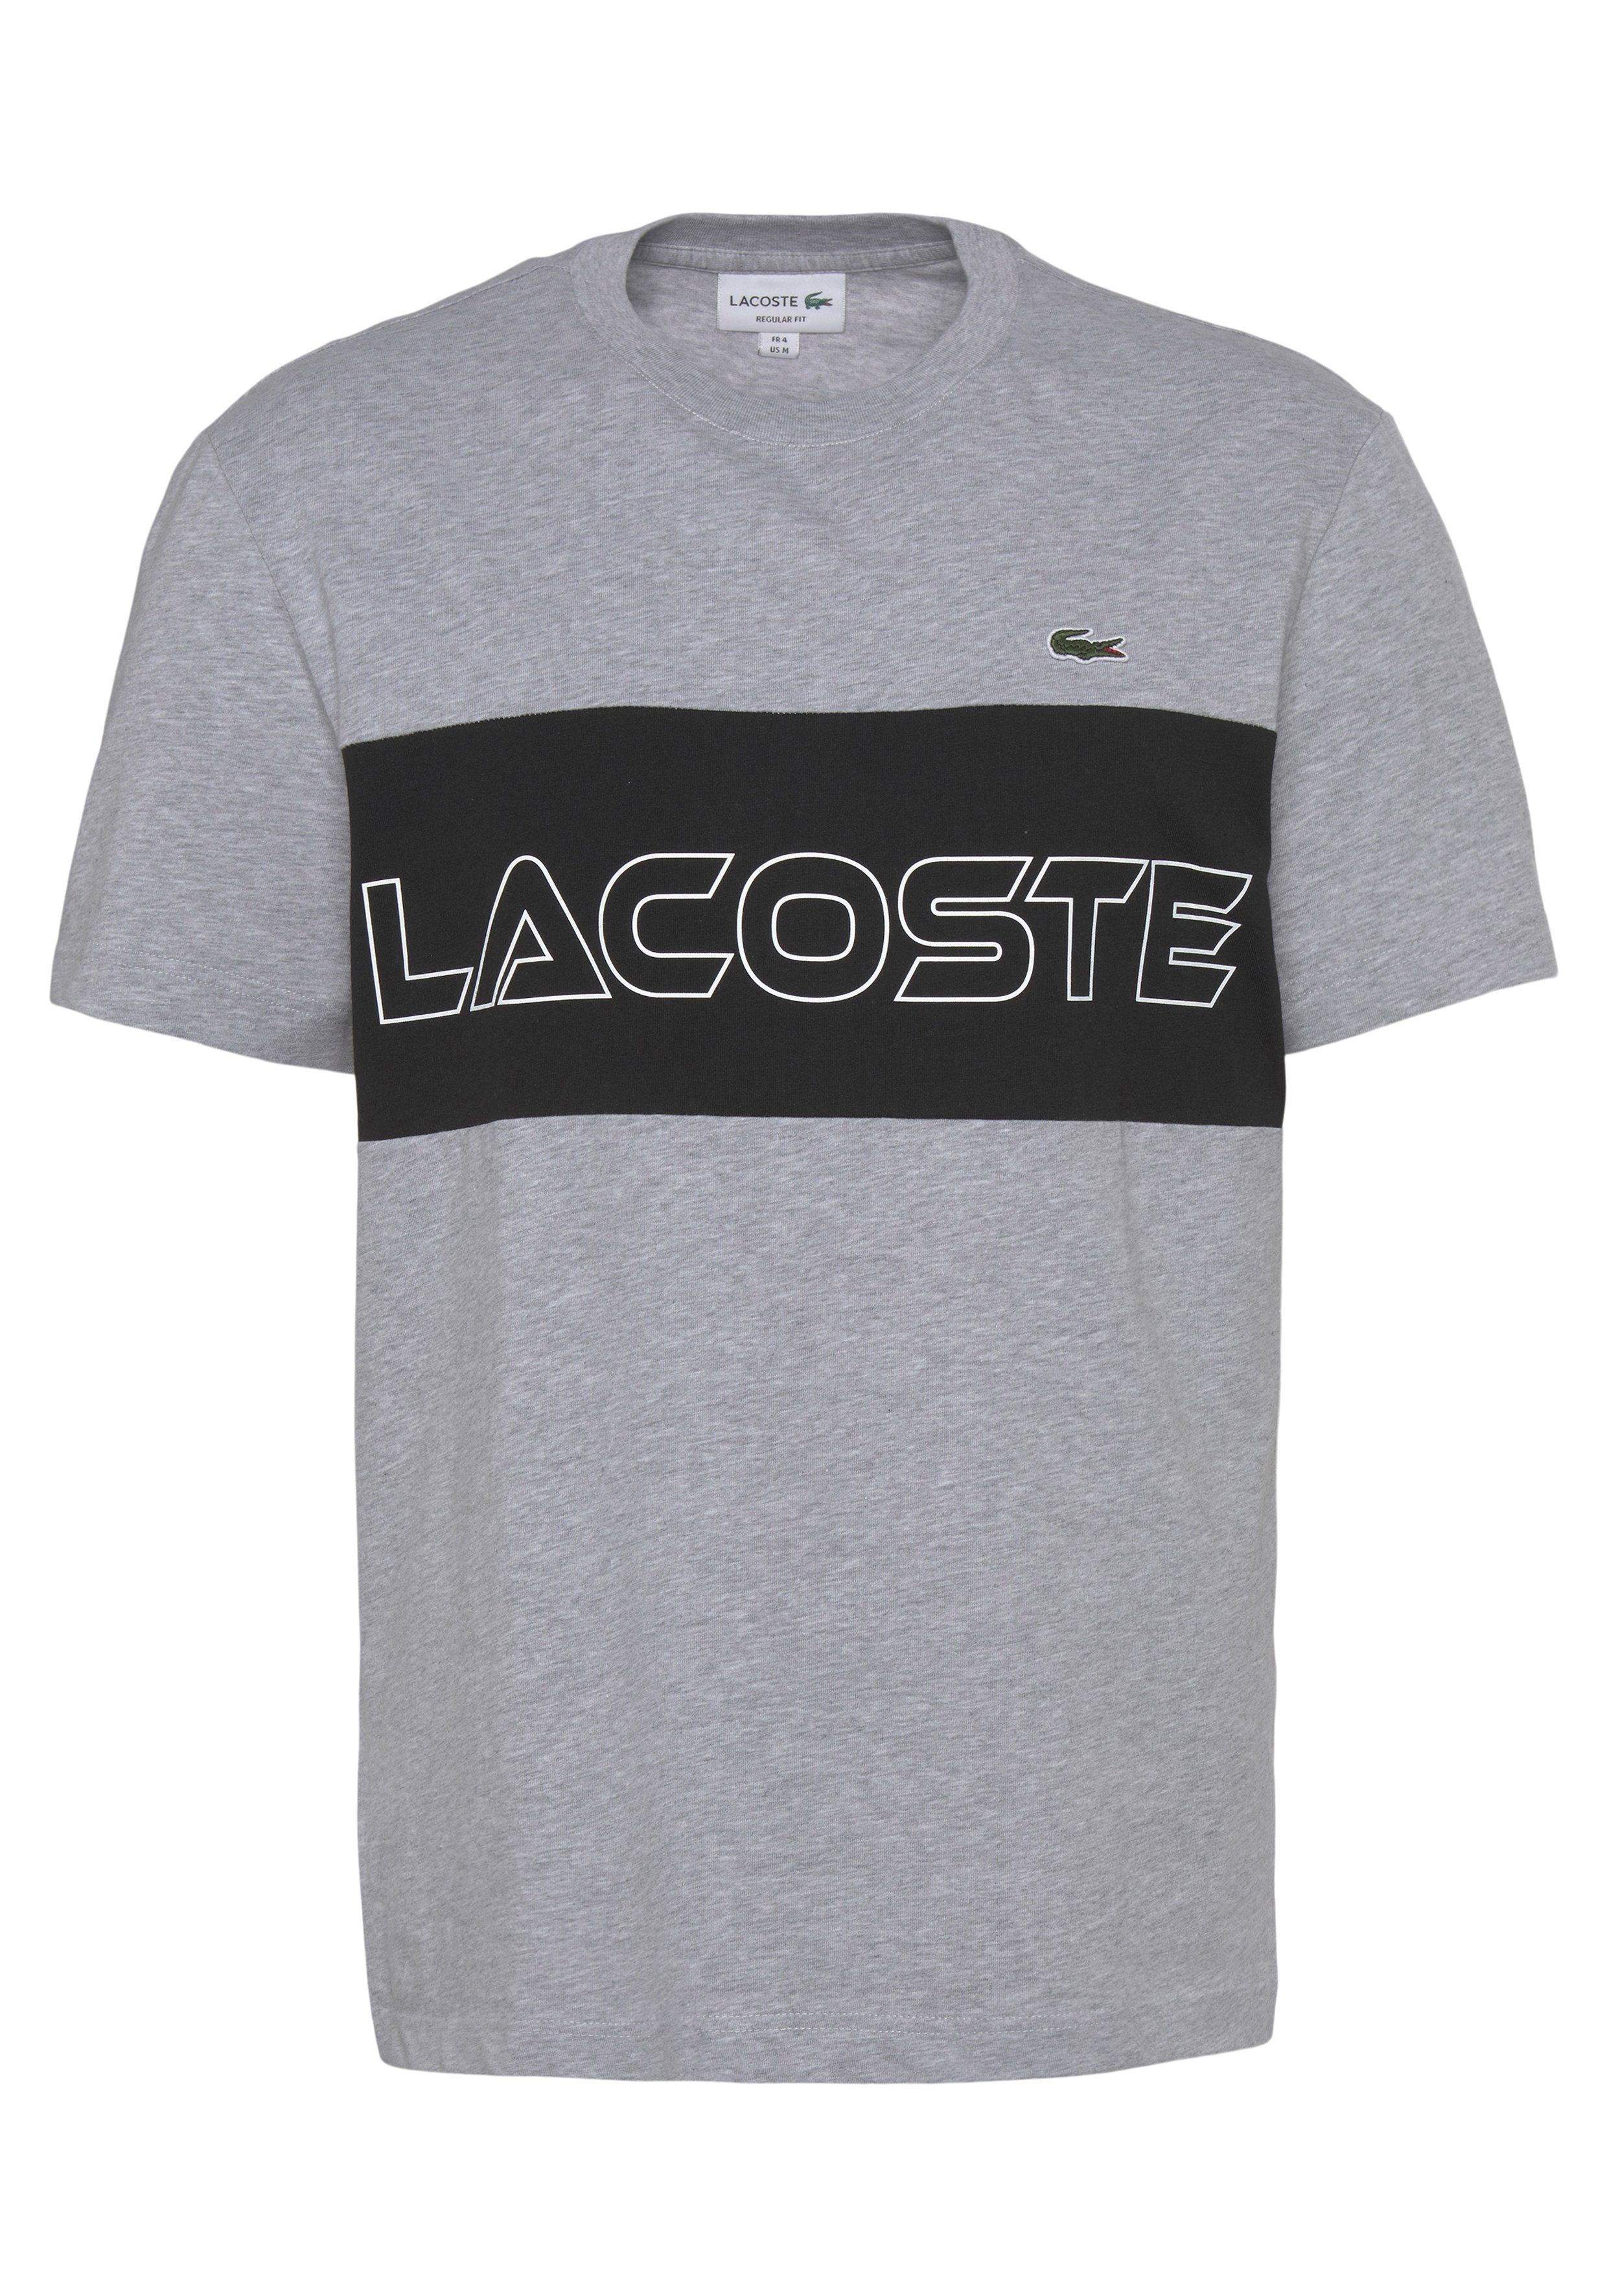 Lacoste T-Shirt T-SHIRT mit großem SILVER CHINE/BLACK auf der Print Brust